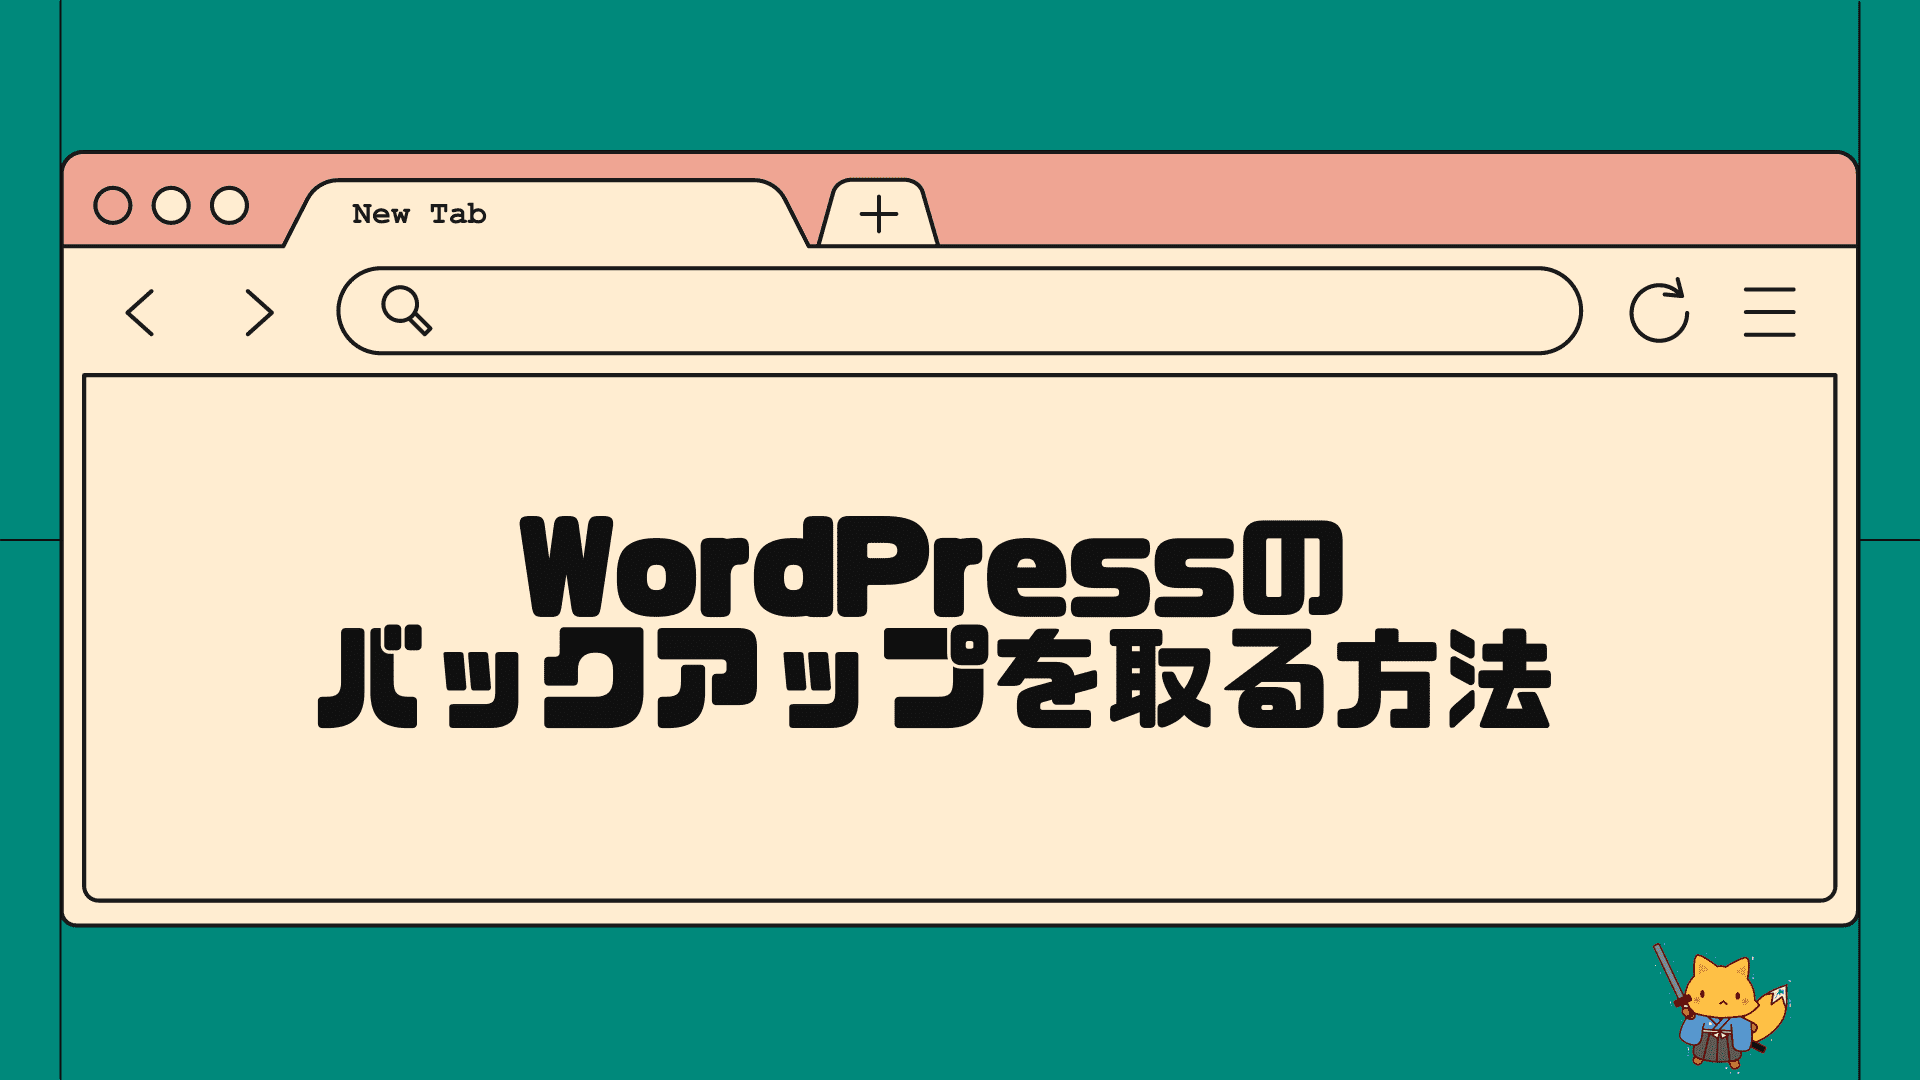 wordpressのバックアップを取る方法